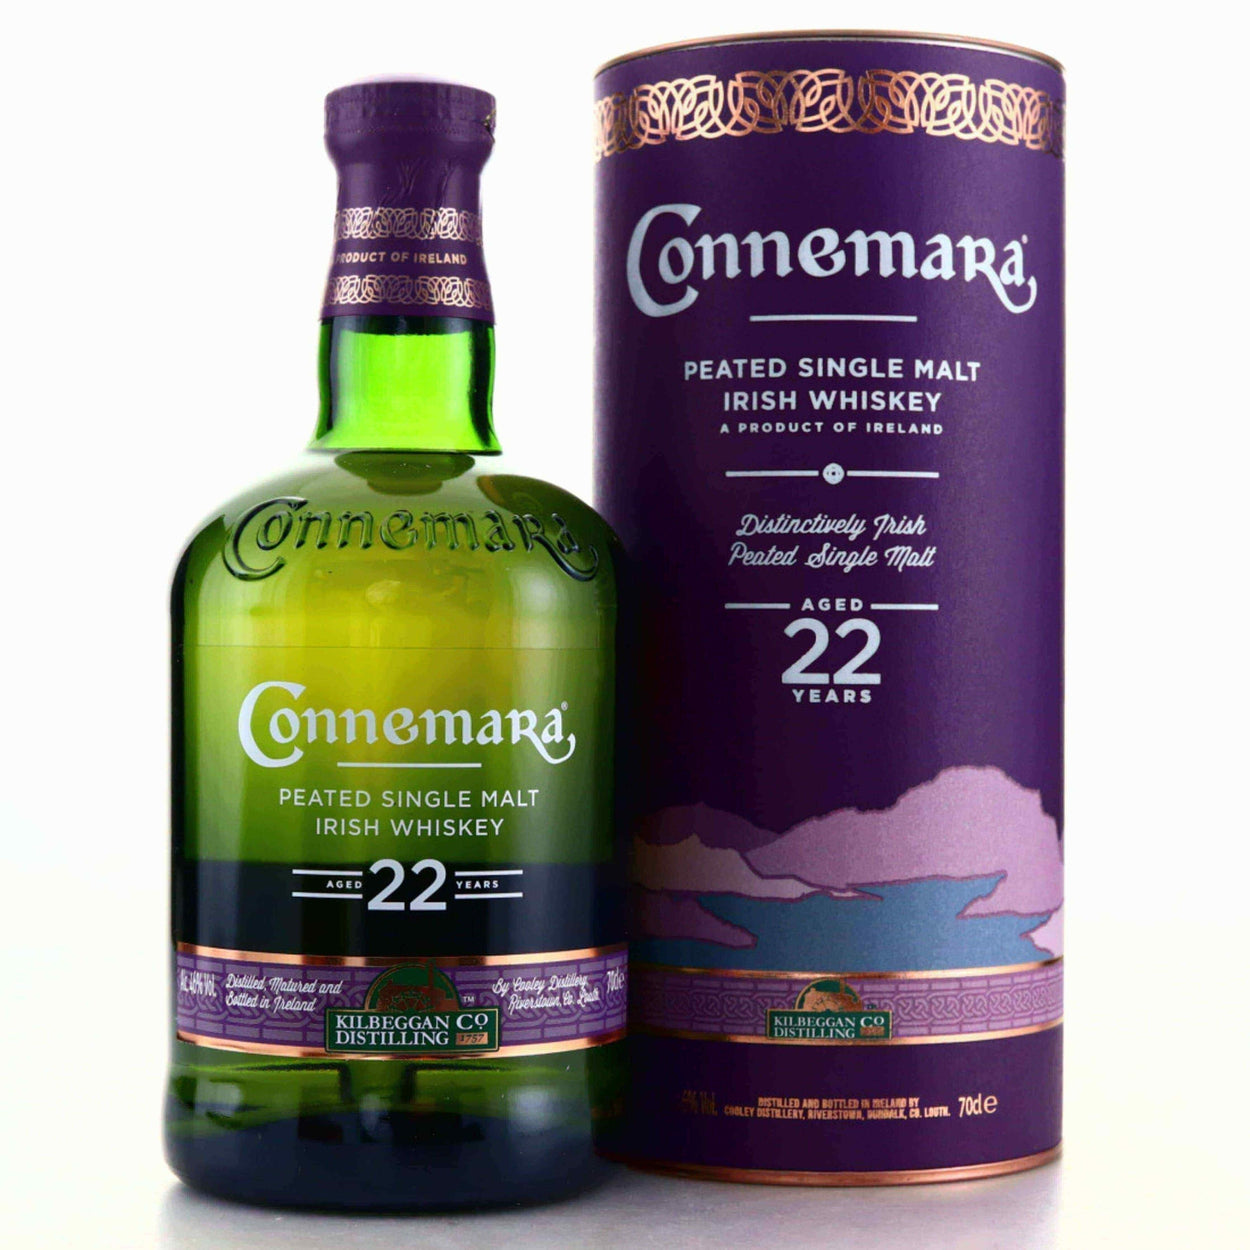 Connemara Original Peated Single Malt Irish Whiskey Review 